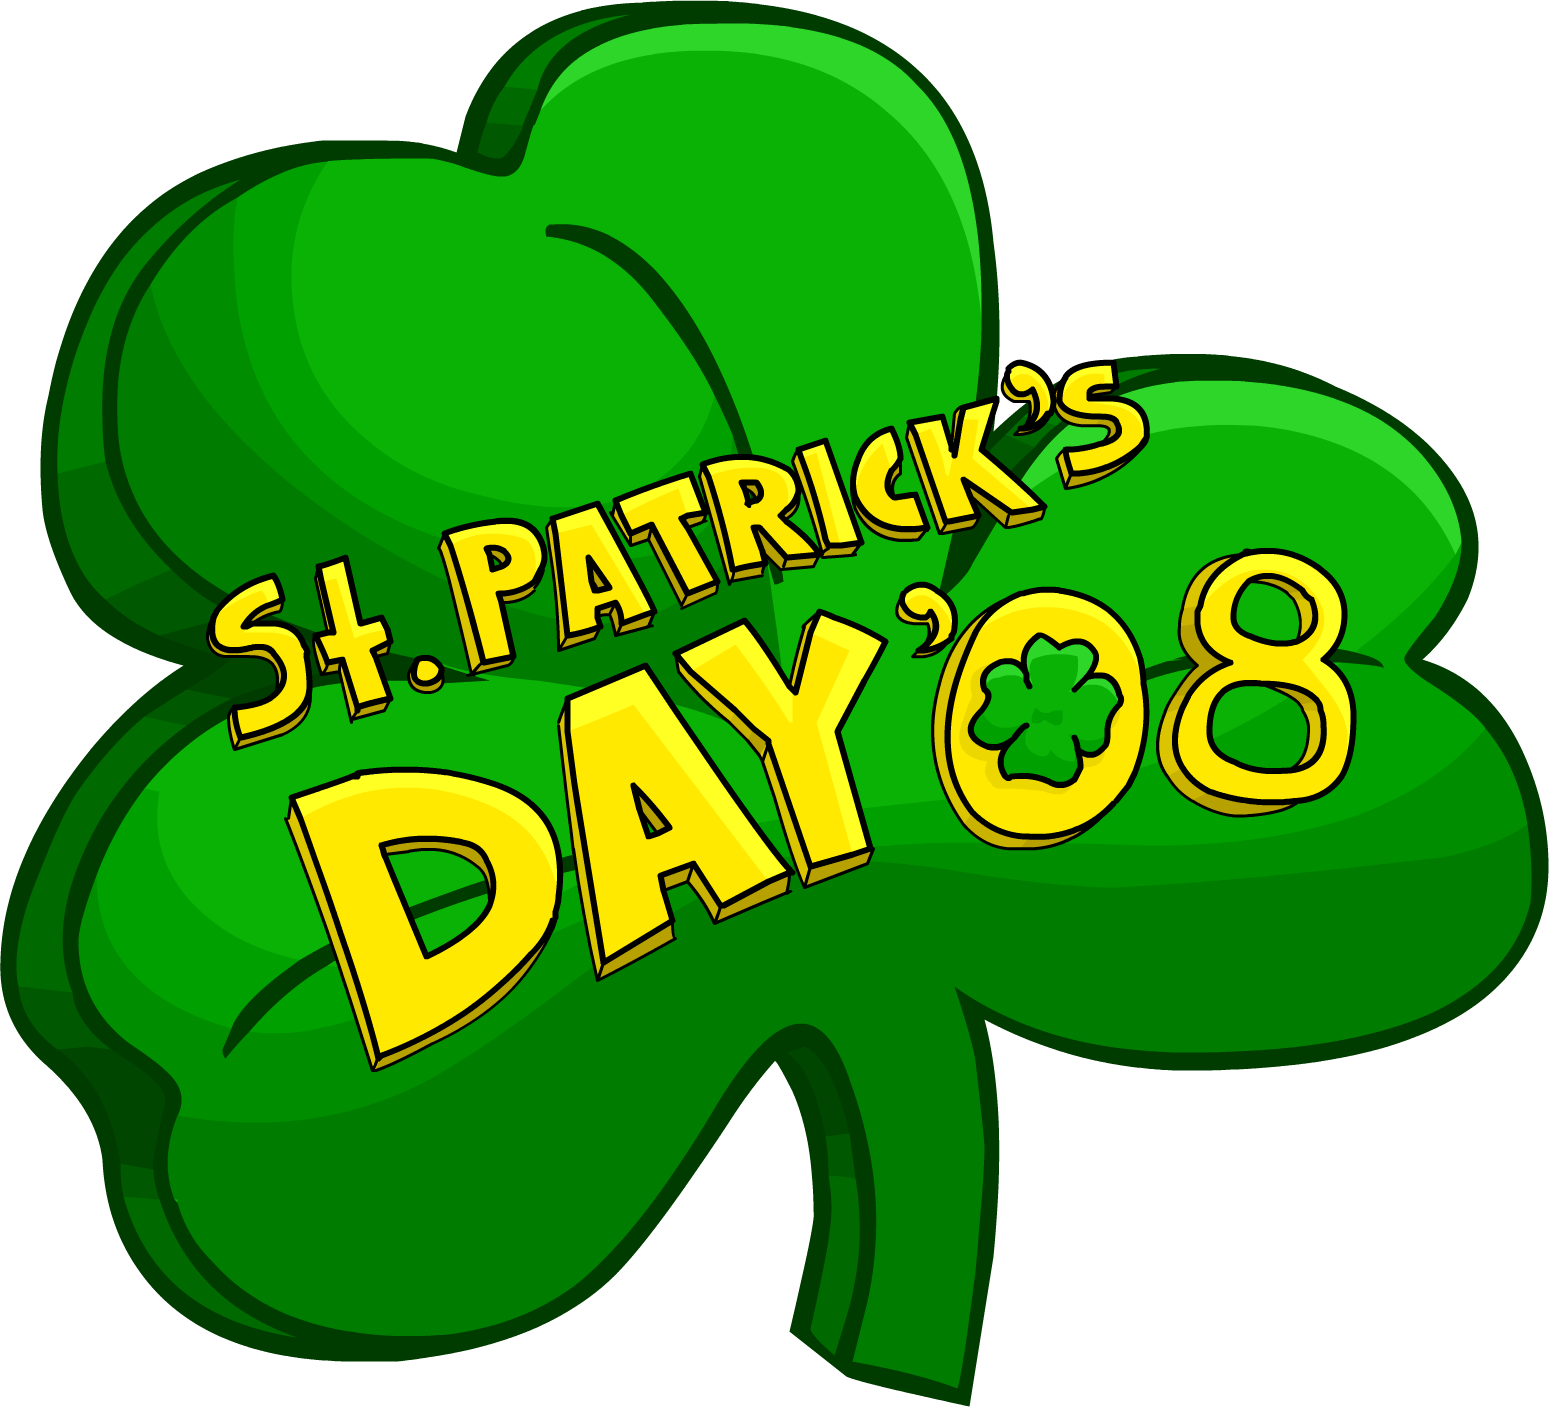 St - Patrick - St Patrick's Day Logo Png (1549x1407)